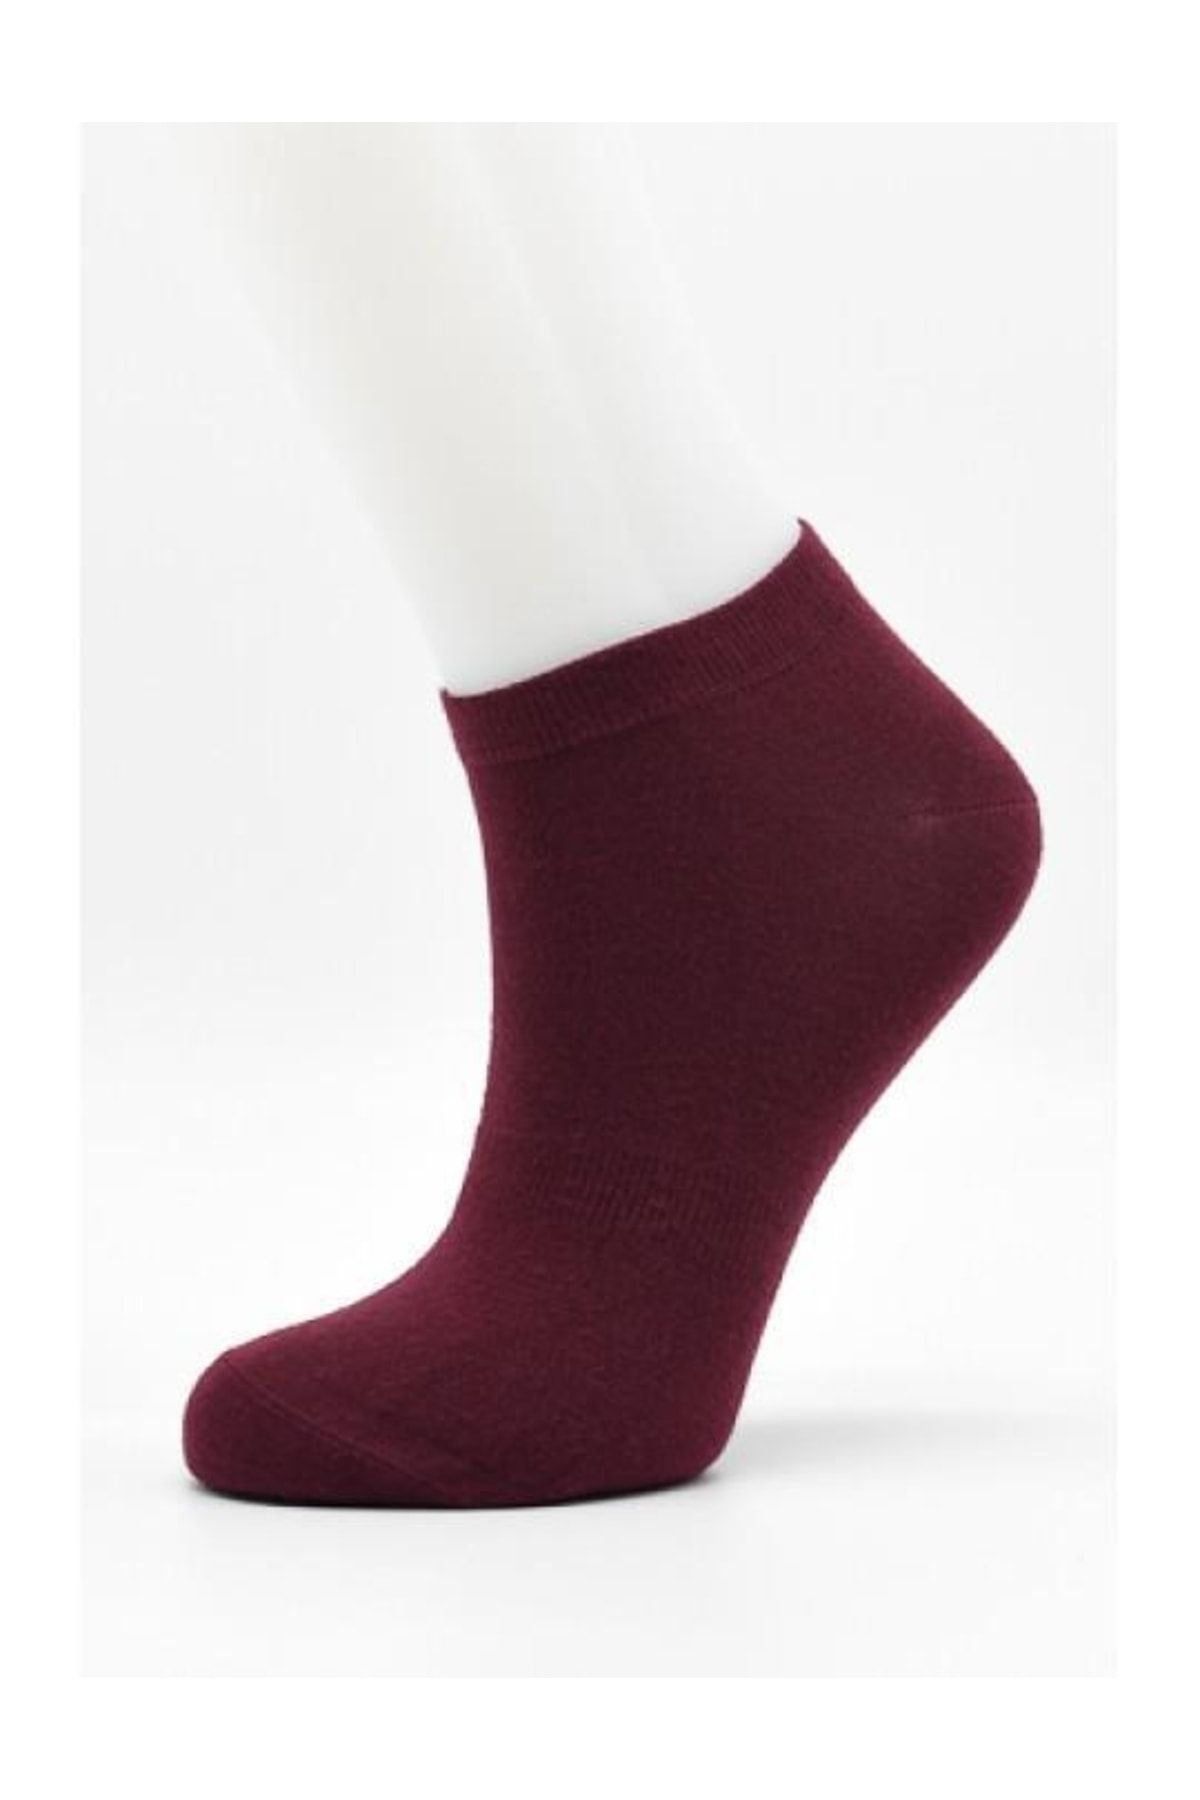 URART Kadın Modal Patik Çorabı | Kadın Modal Patik-1